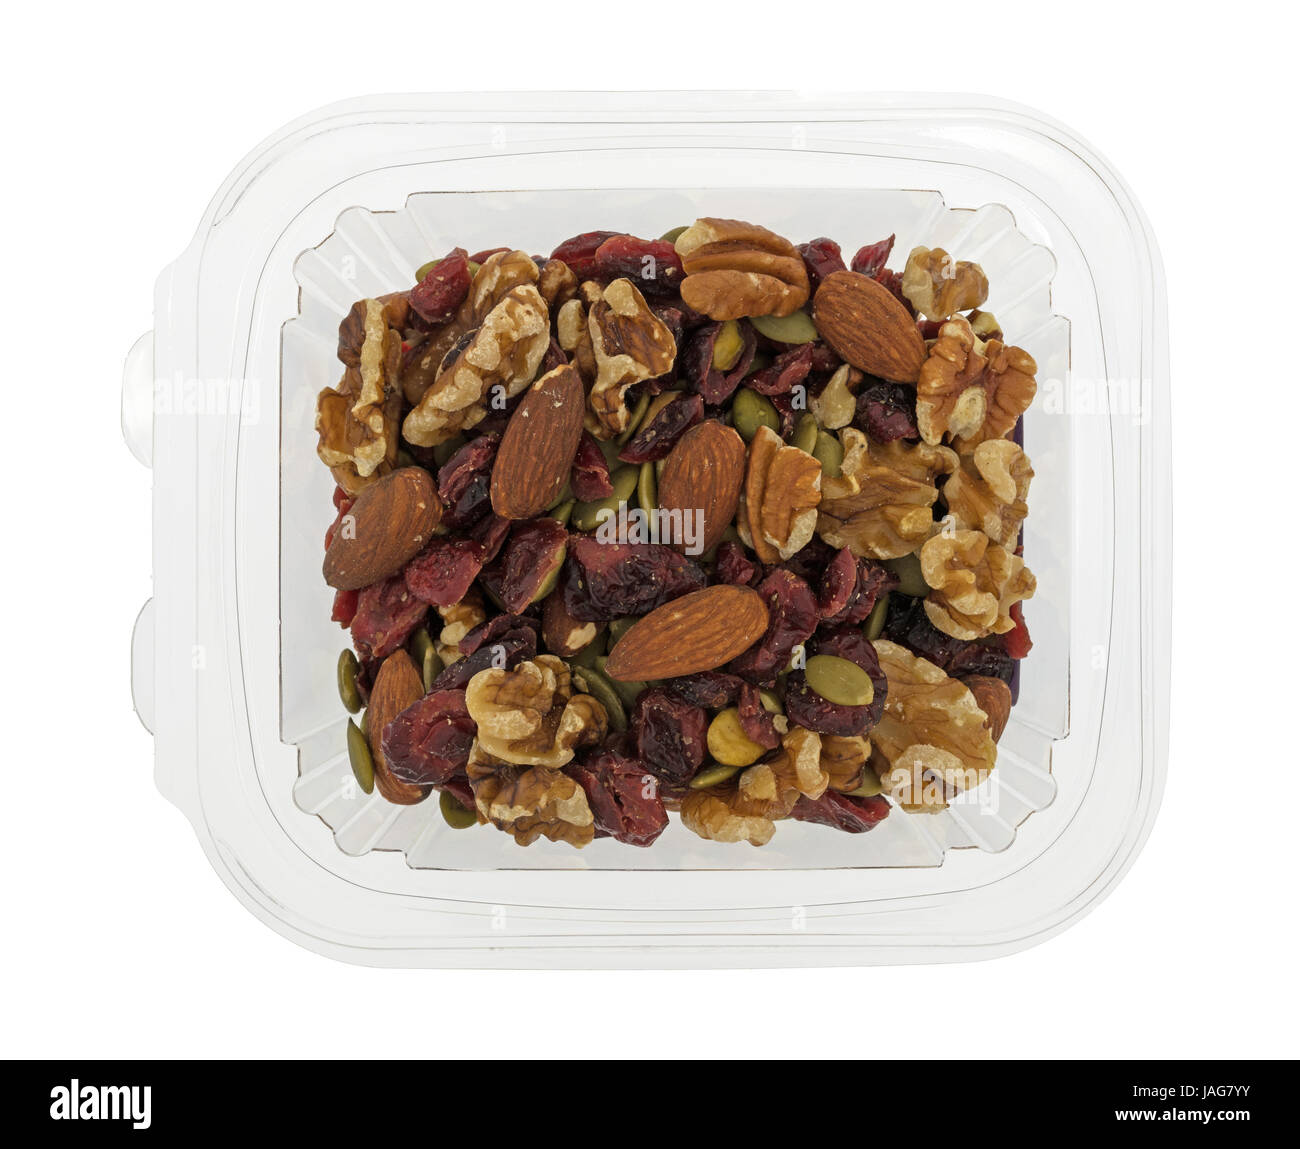 Draufsicht der Omega-3-Trail Mix Nüssen und Früchten in einem Plastikbehälter isoliert auf einem weißen Hintergrund. Stockfoto